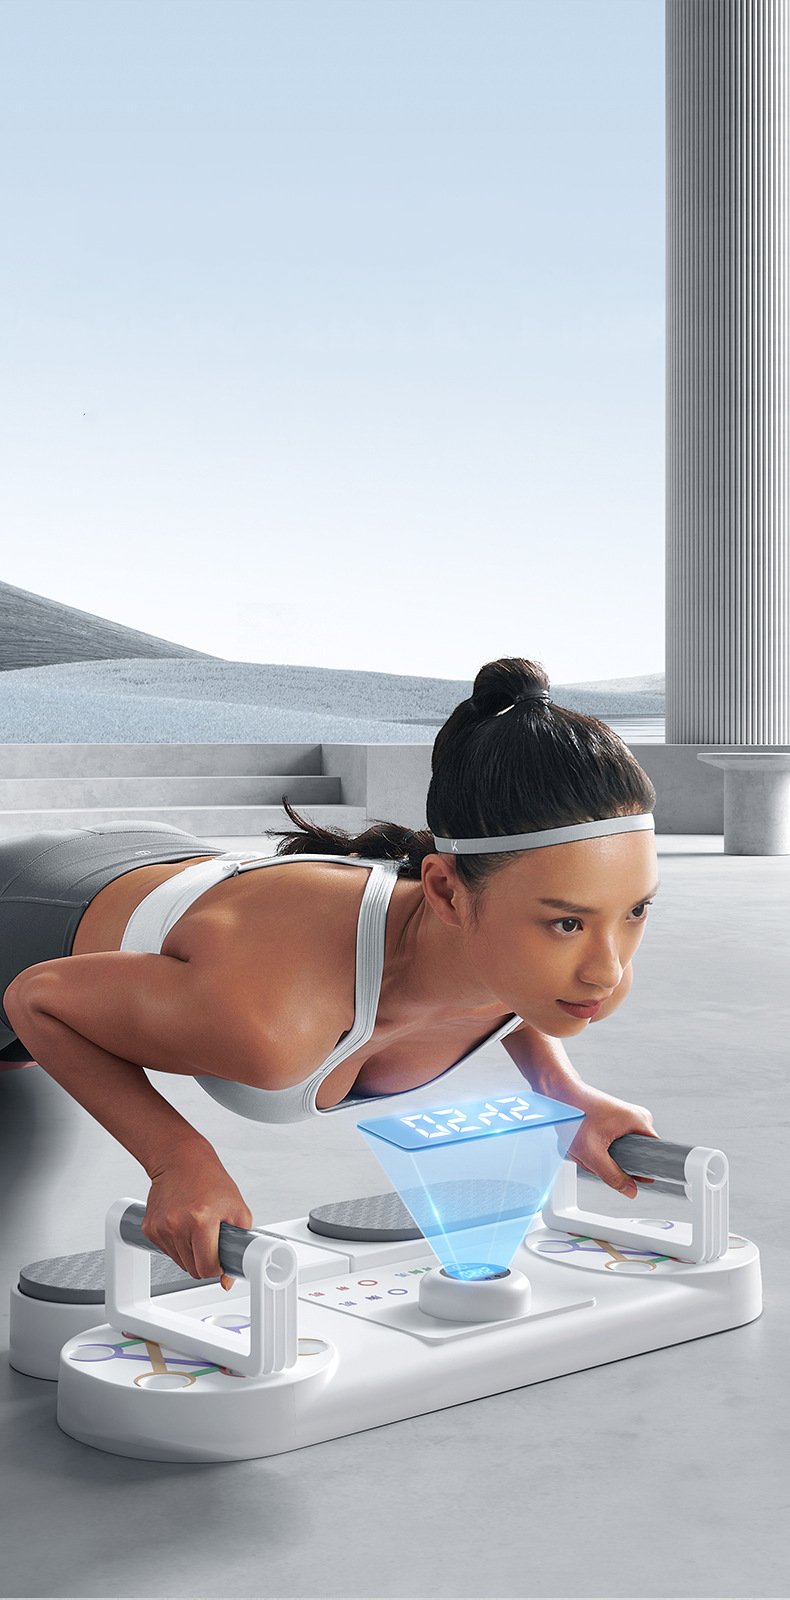 Máy tập plank squat cơ bụng kết hợp chống đẩy phát triển cơ thể toàn diện Advantage Club (có đồng hồ và dây kéo)